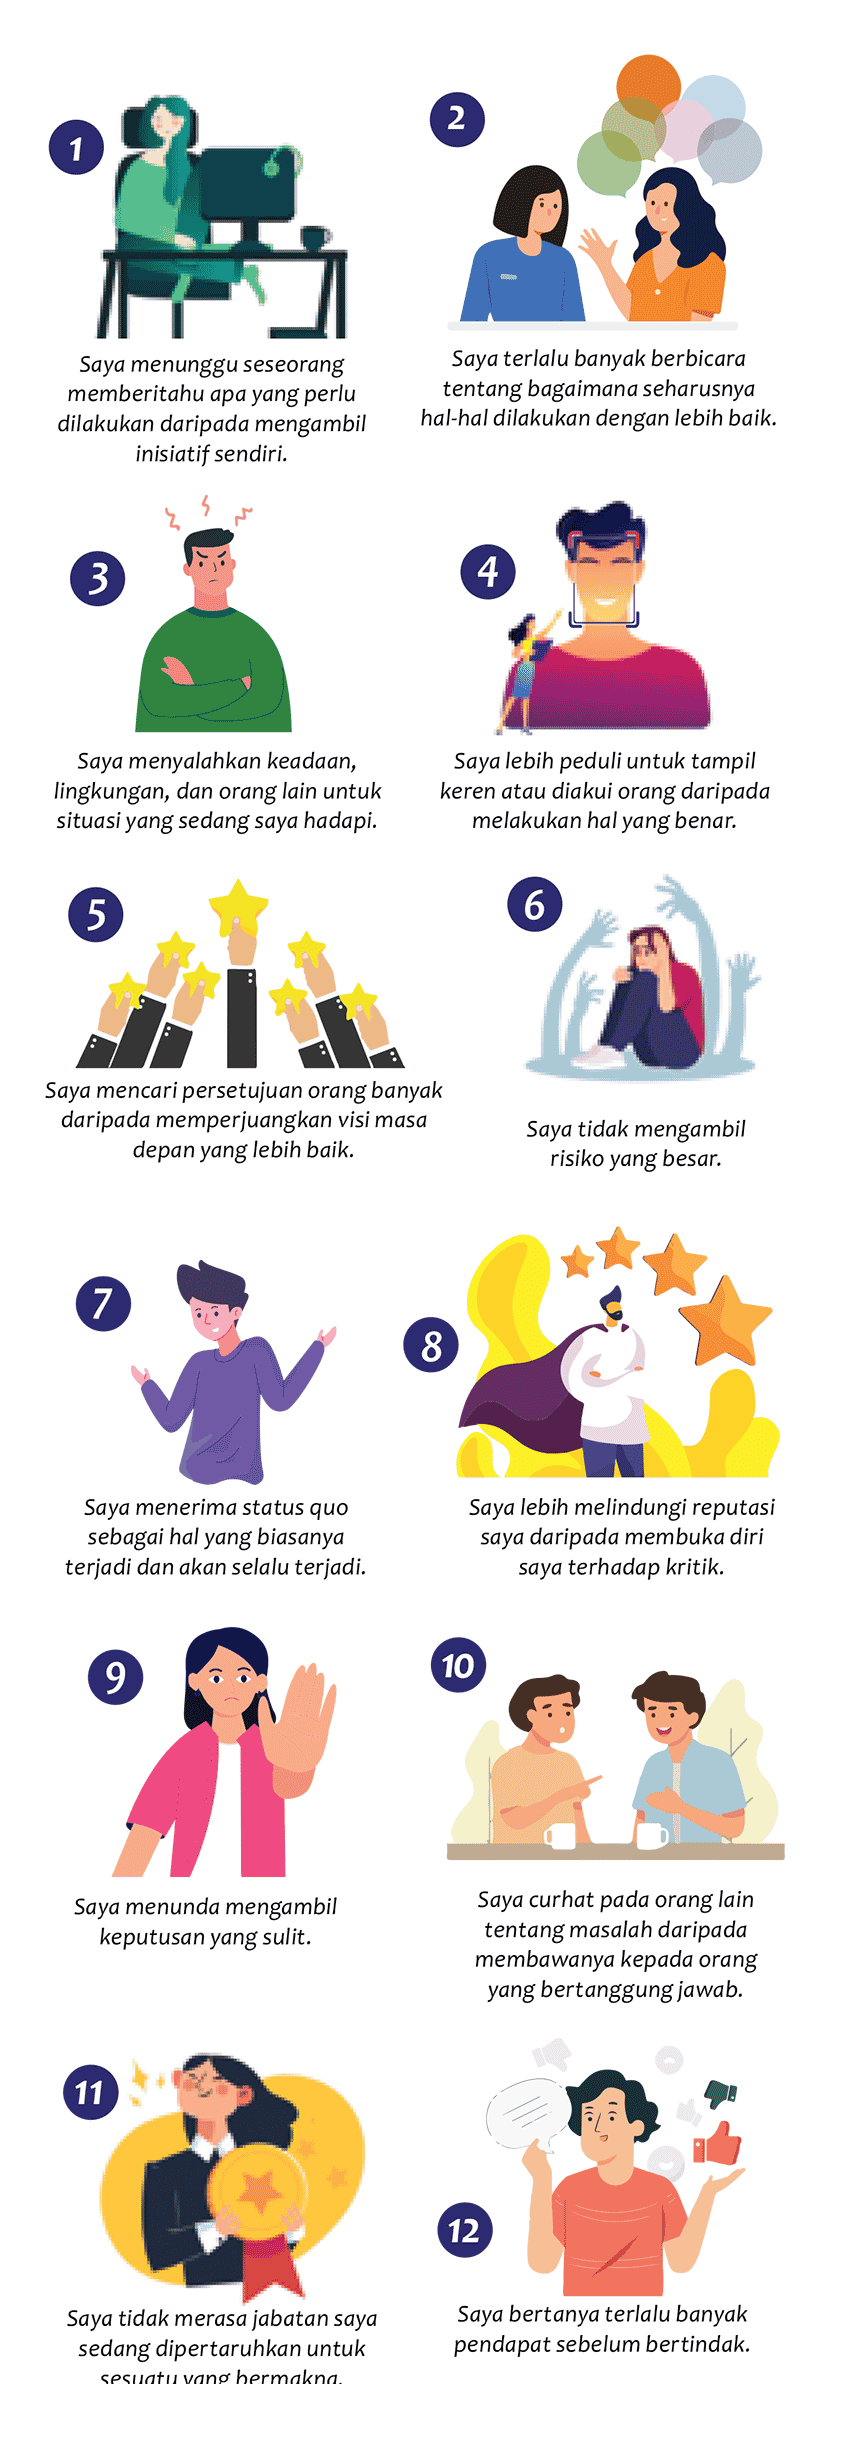 12 signs of weak leadership